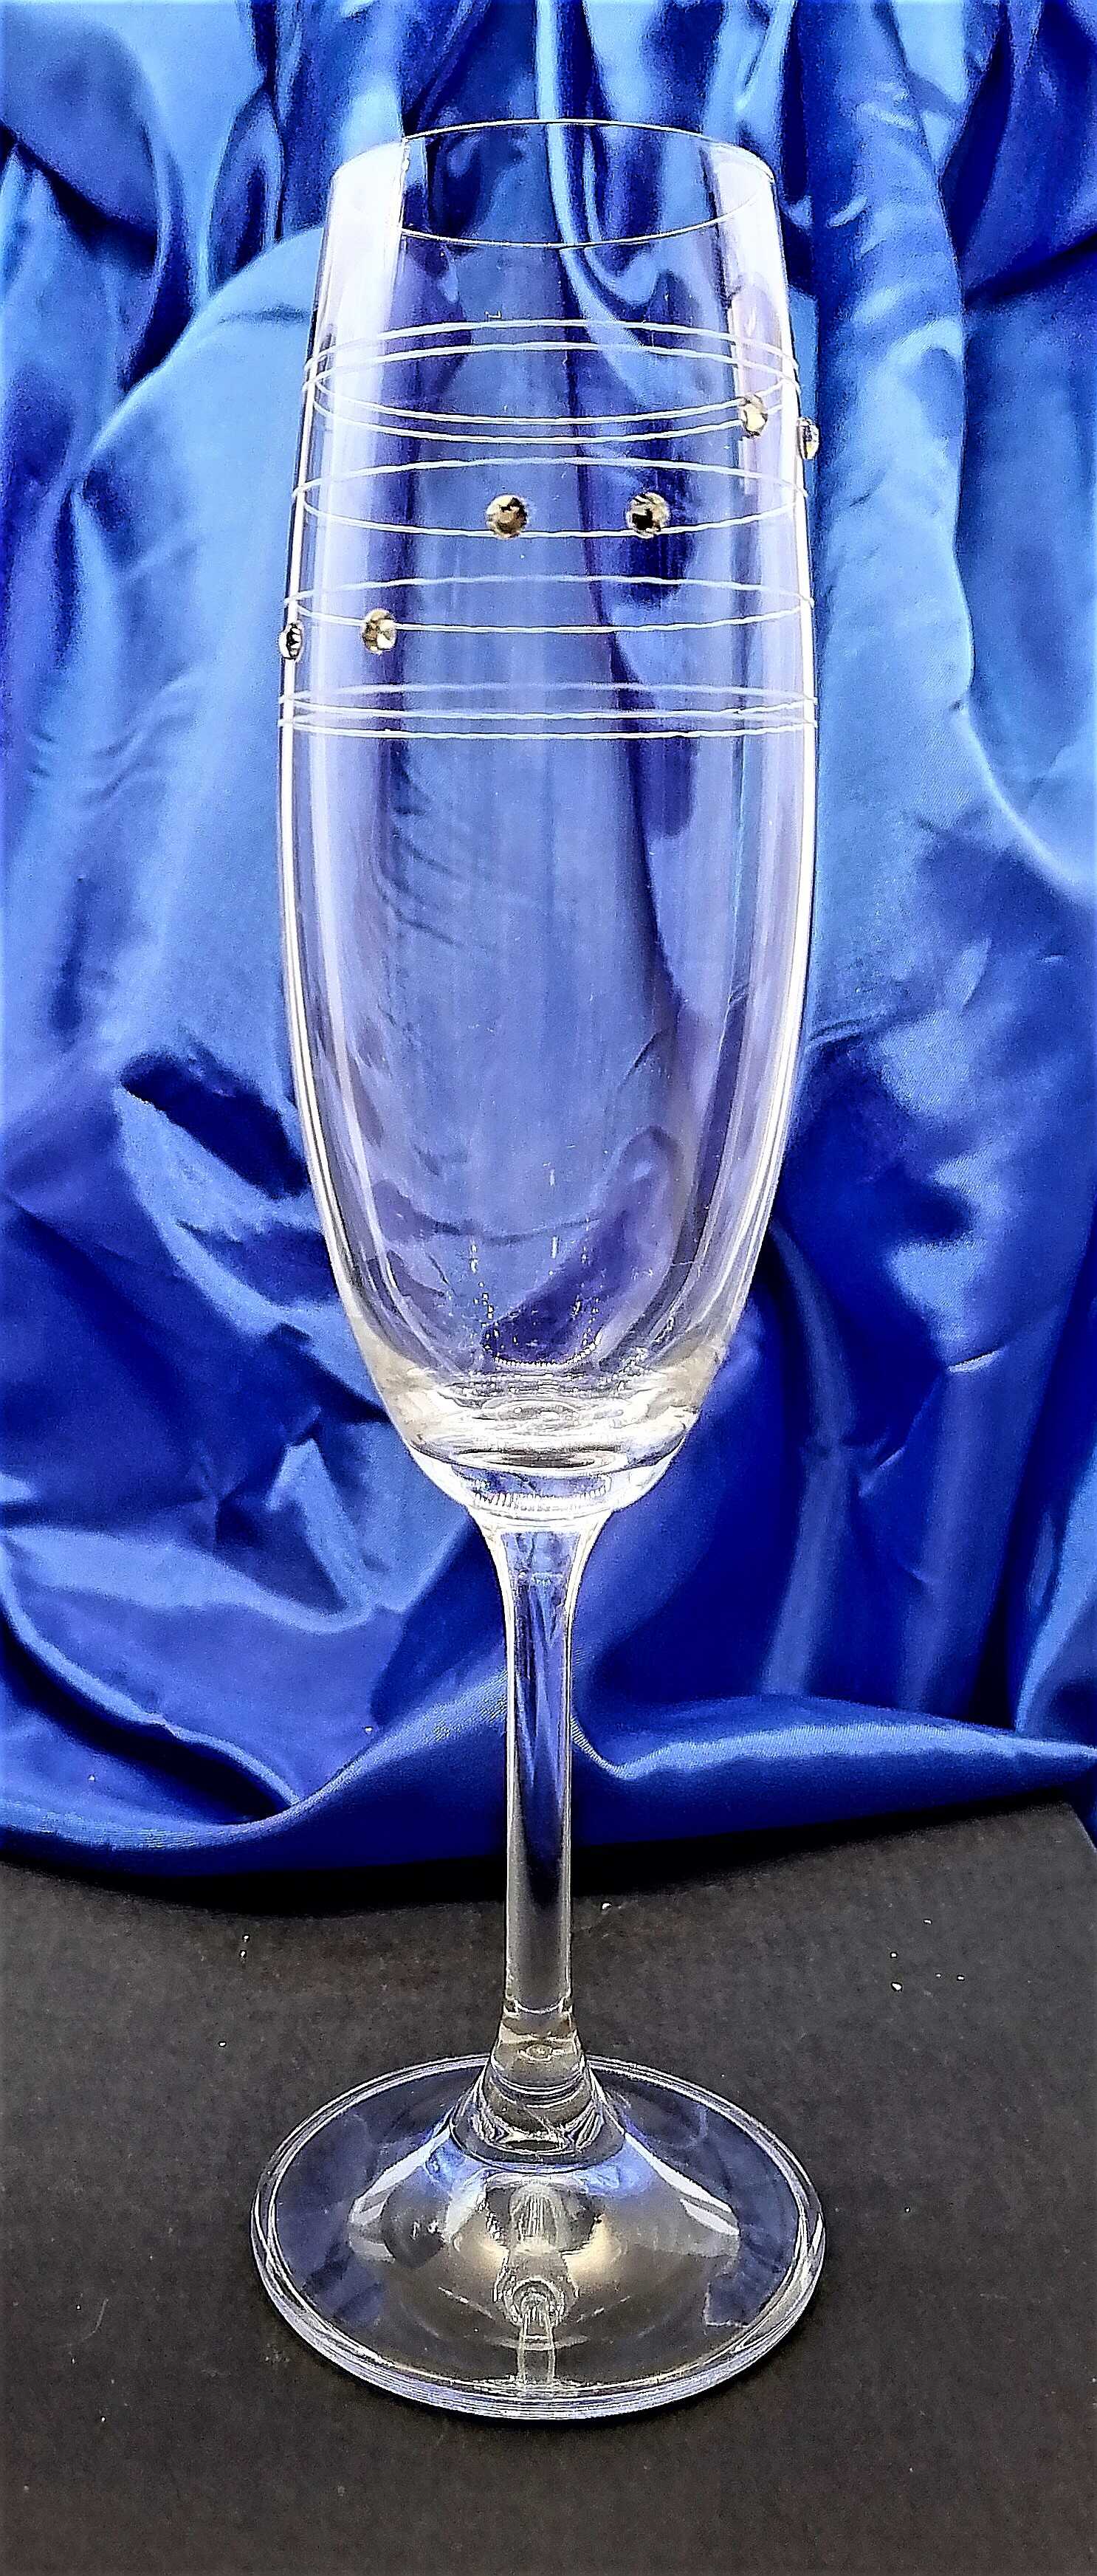 Sektkelch/Champagner Hand geschliffen mit SWAROVSkI Kristallen Muster Claudia CL-538 200 ml 2 Stück.